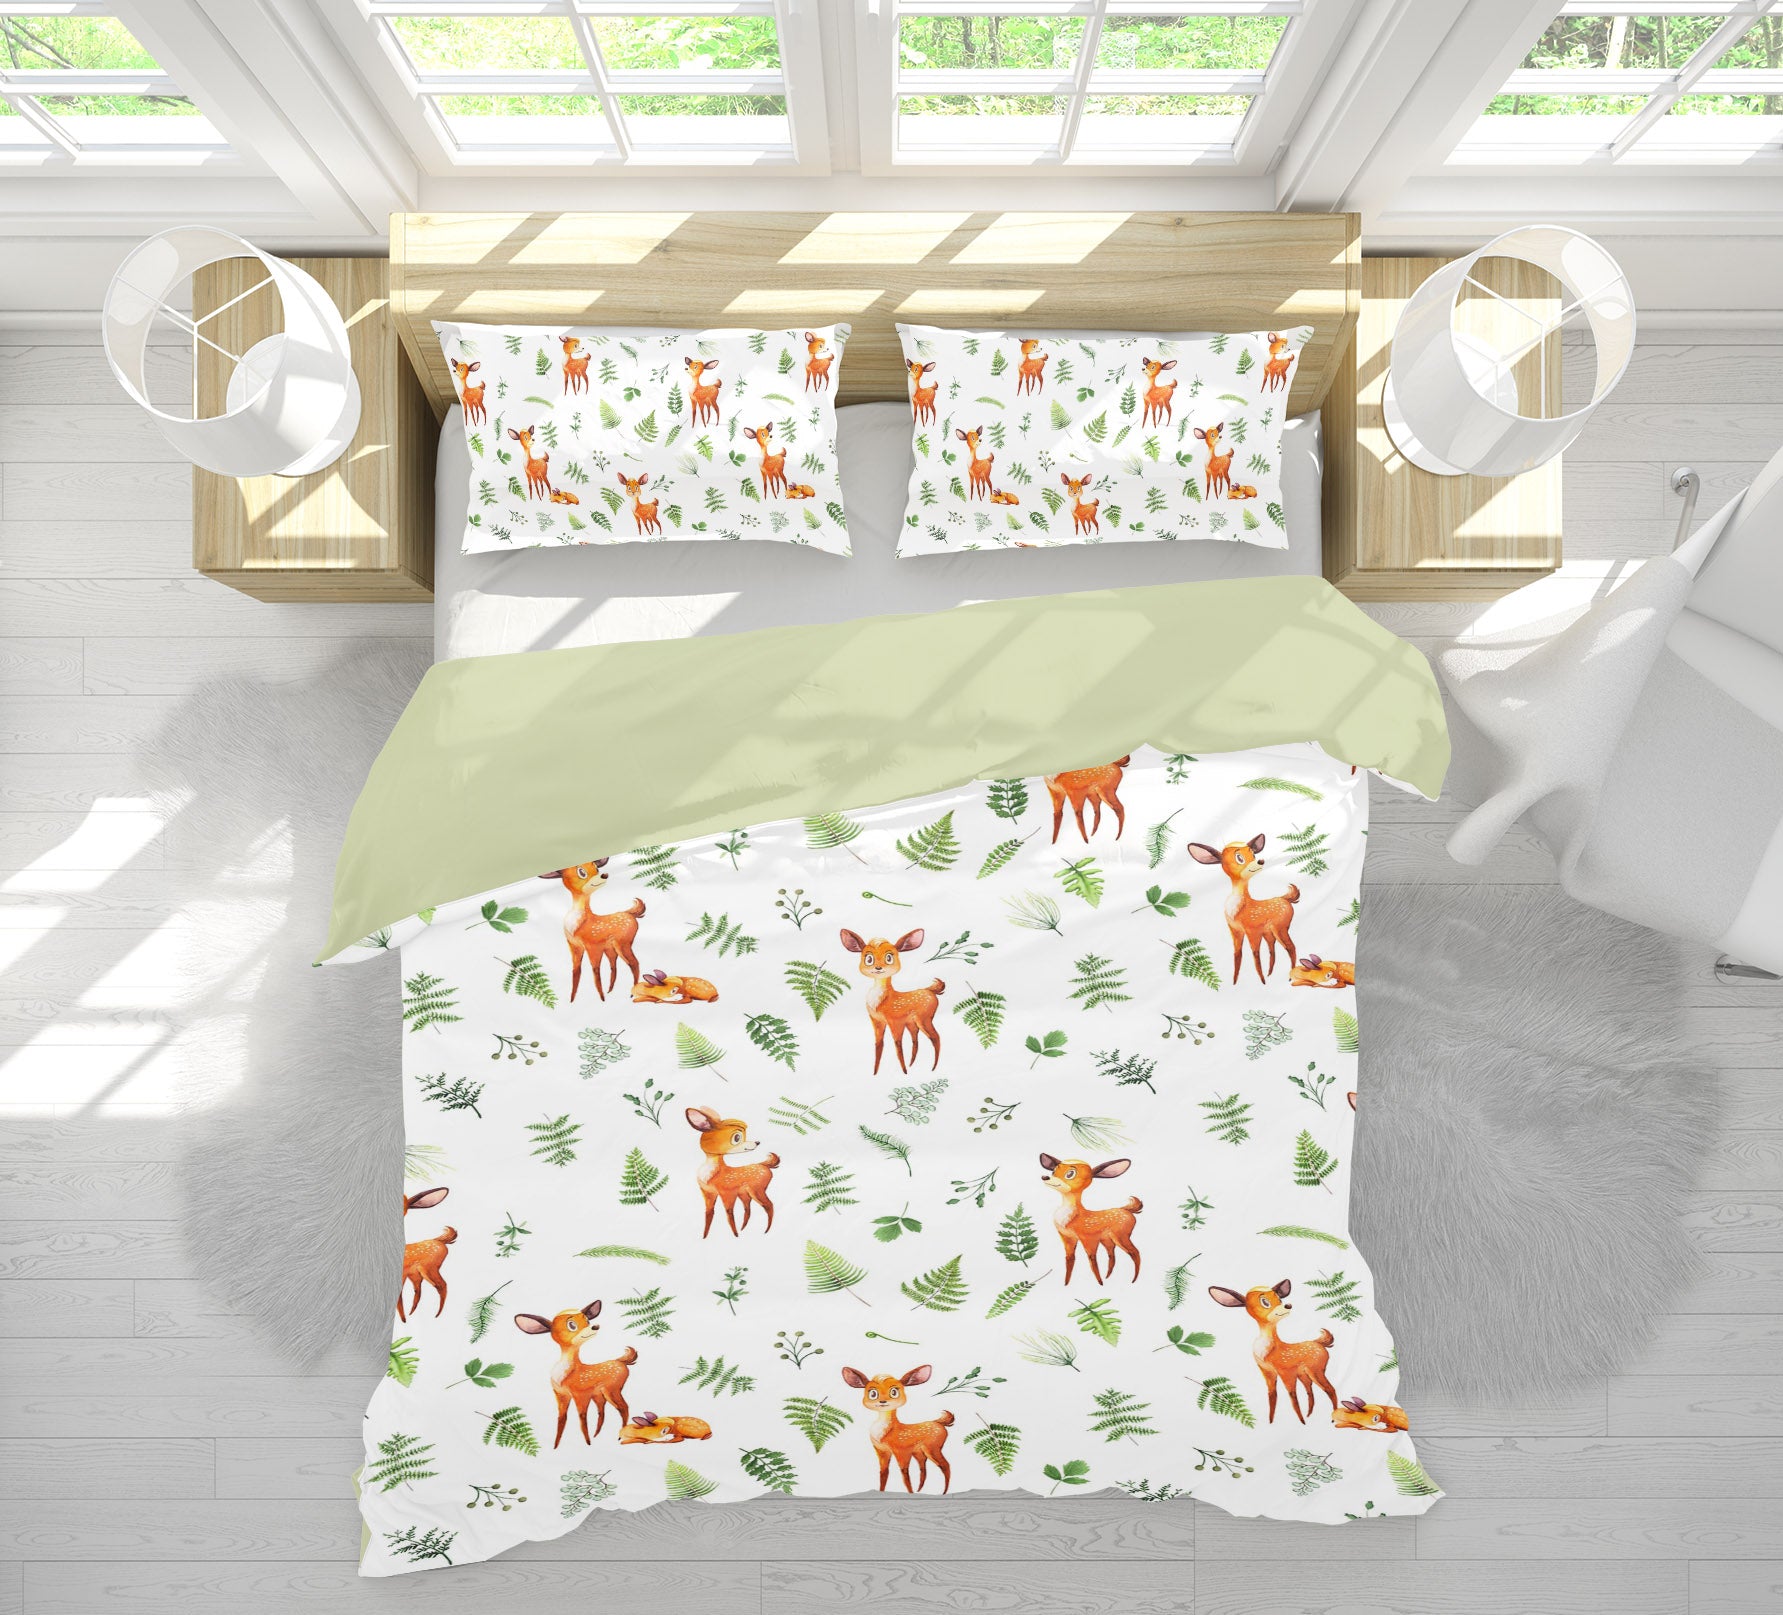 3D Sika Deer 219 Uta Naumann Bedding Bed Pillowcases Quilt